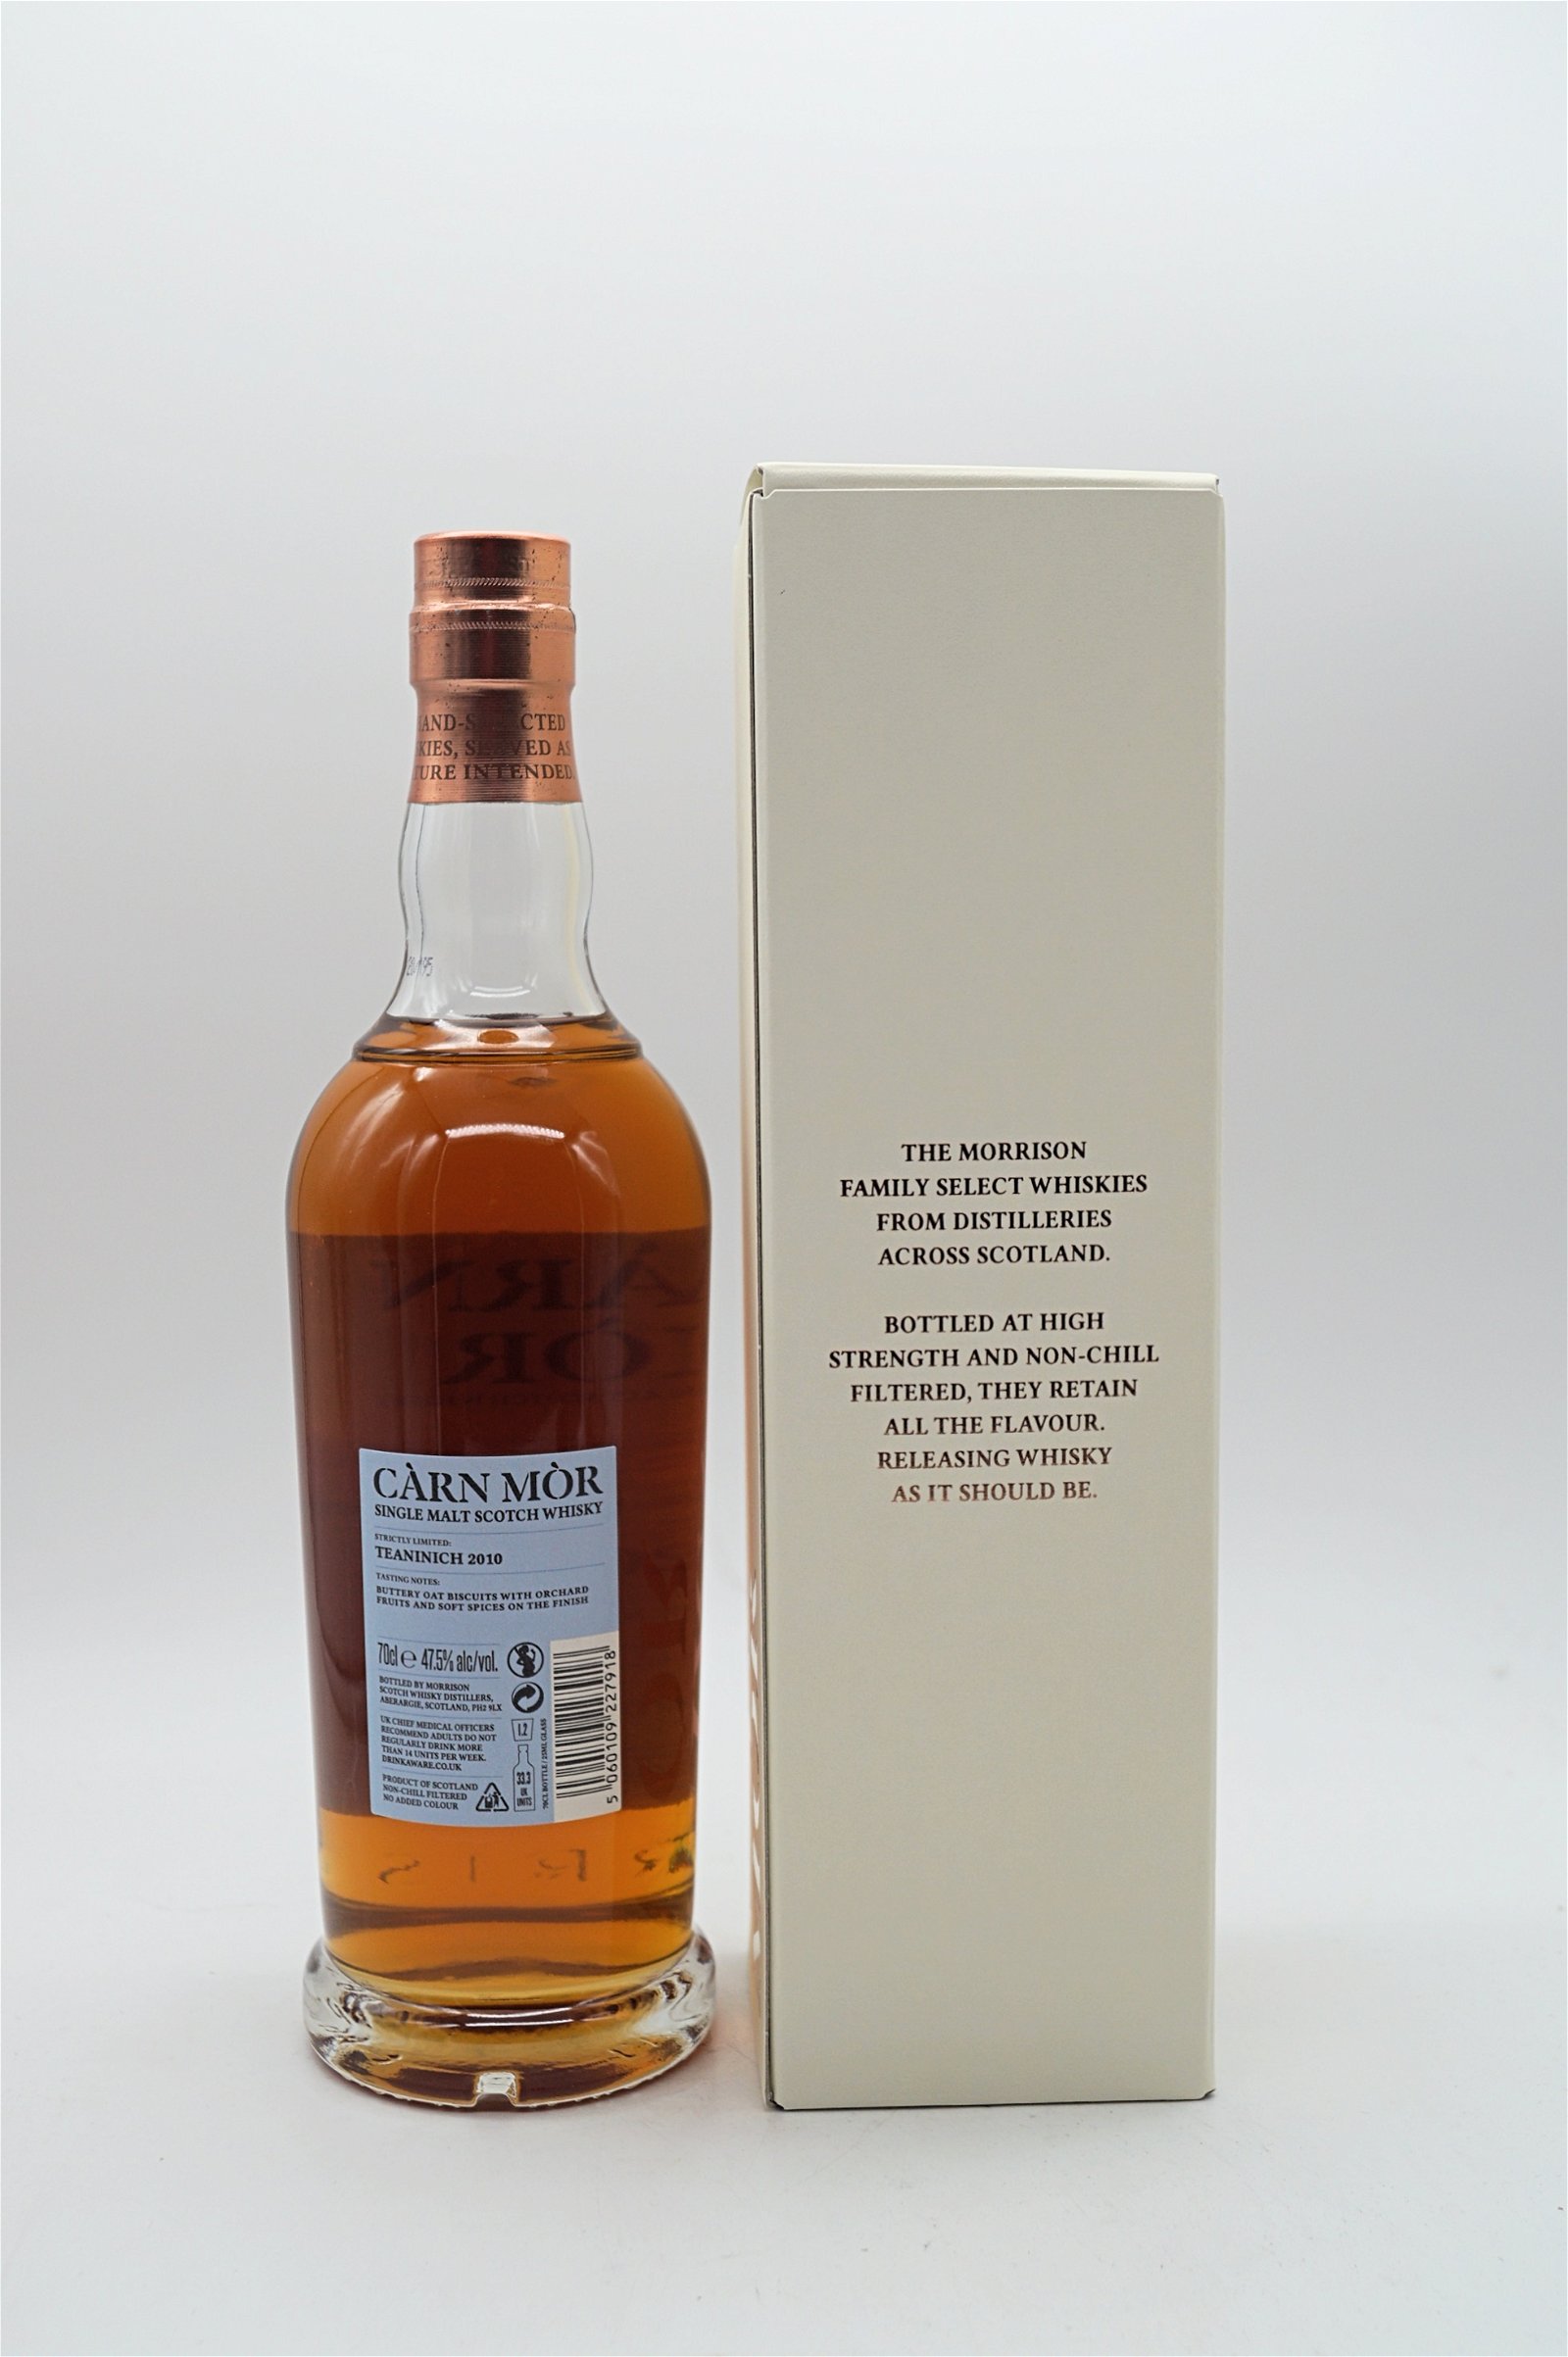 Carn Mor Teaninich 2010 PX Sherry Finish Strictly Limited Single Malt Scotch Whisky